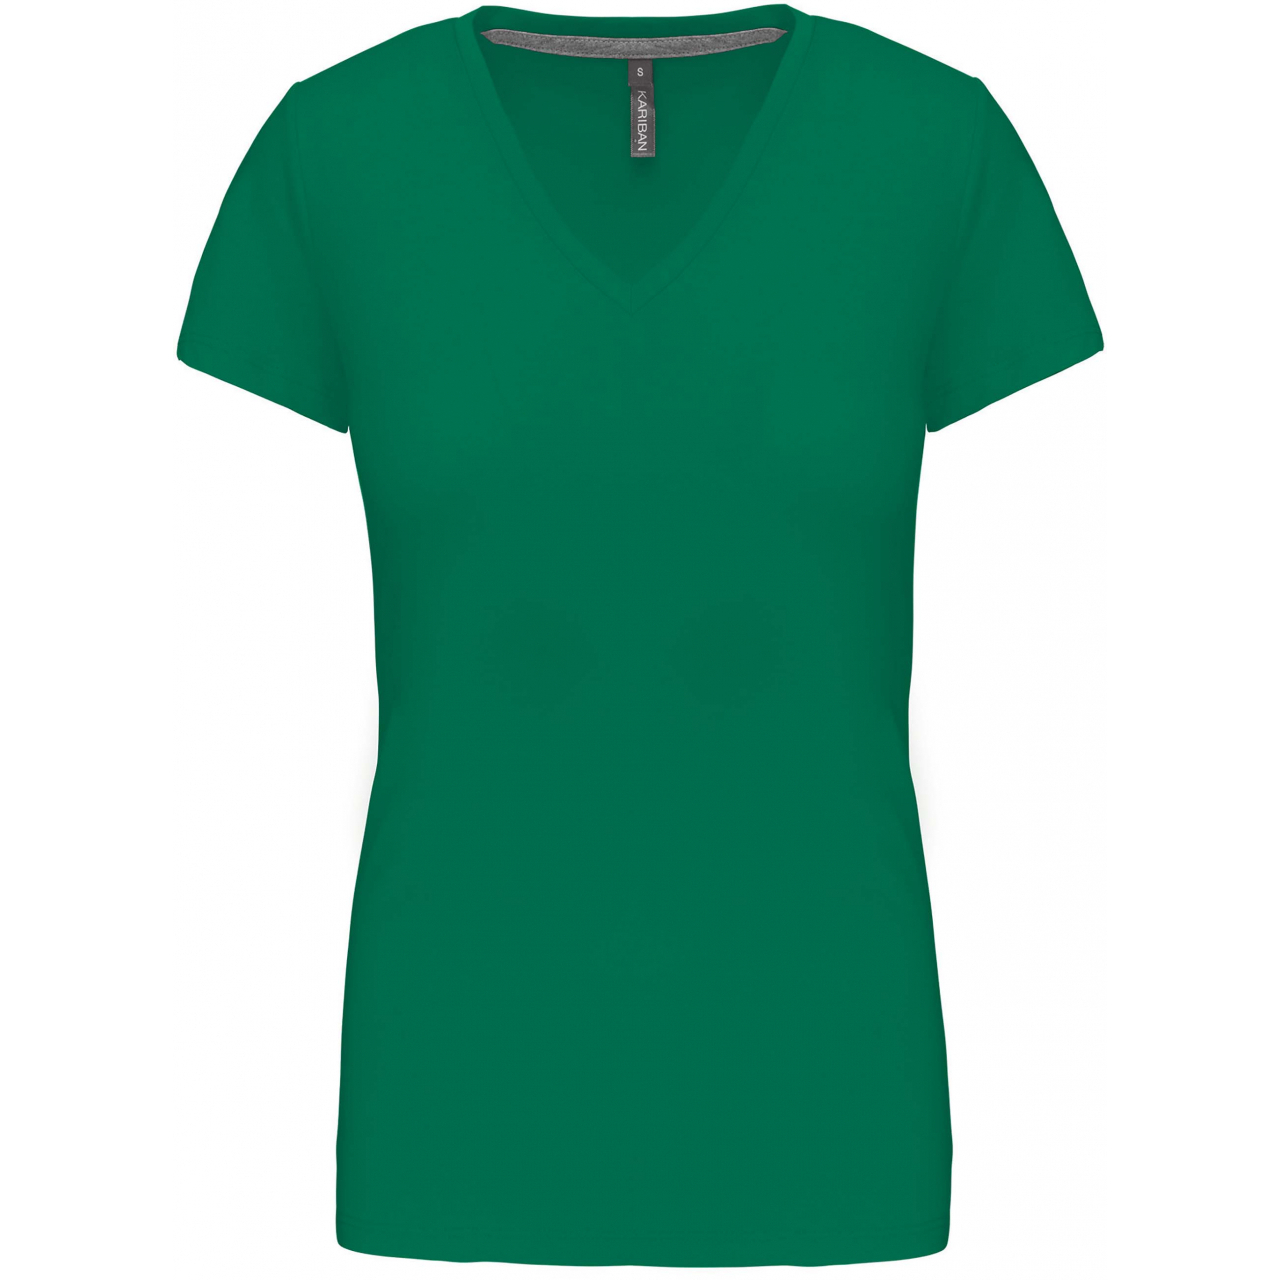 Dámské tričko Kariban V-neck s krátkým rukávem - zelené, XXL